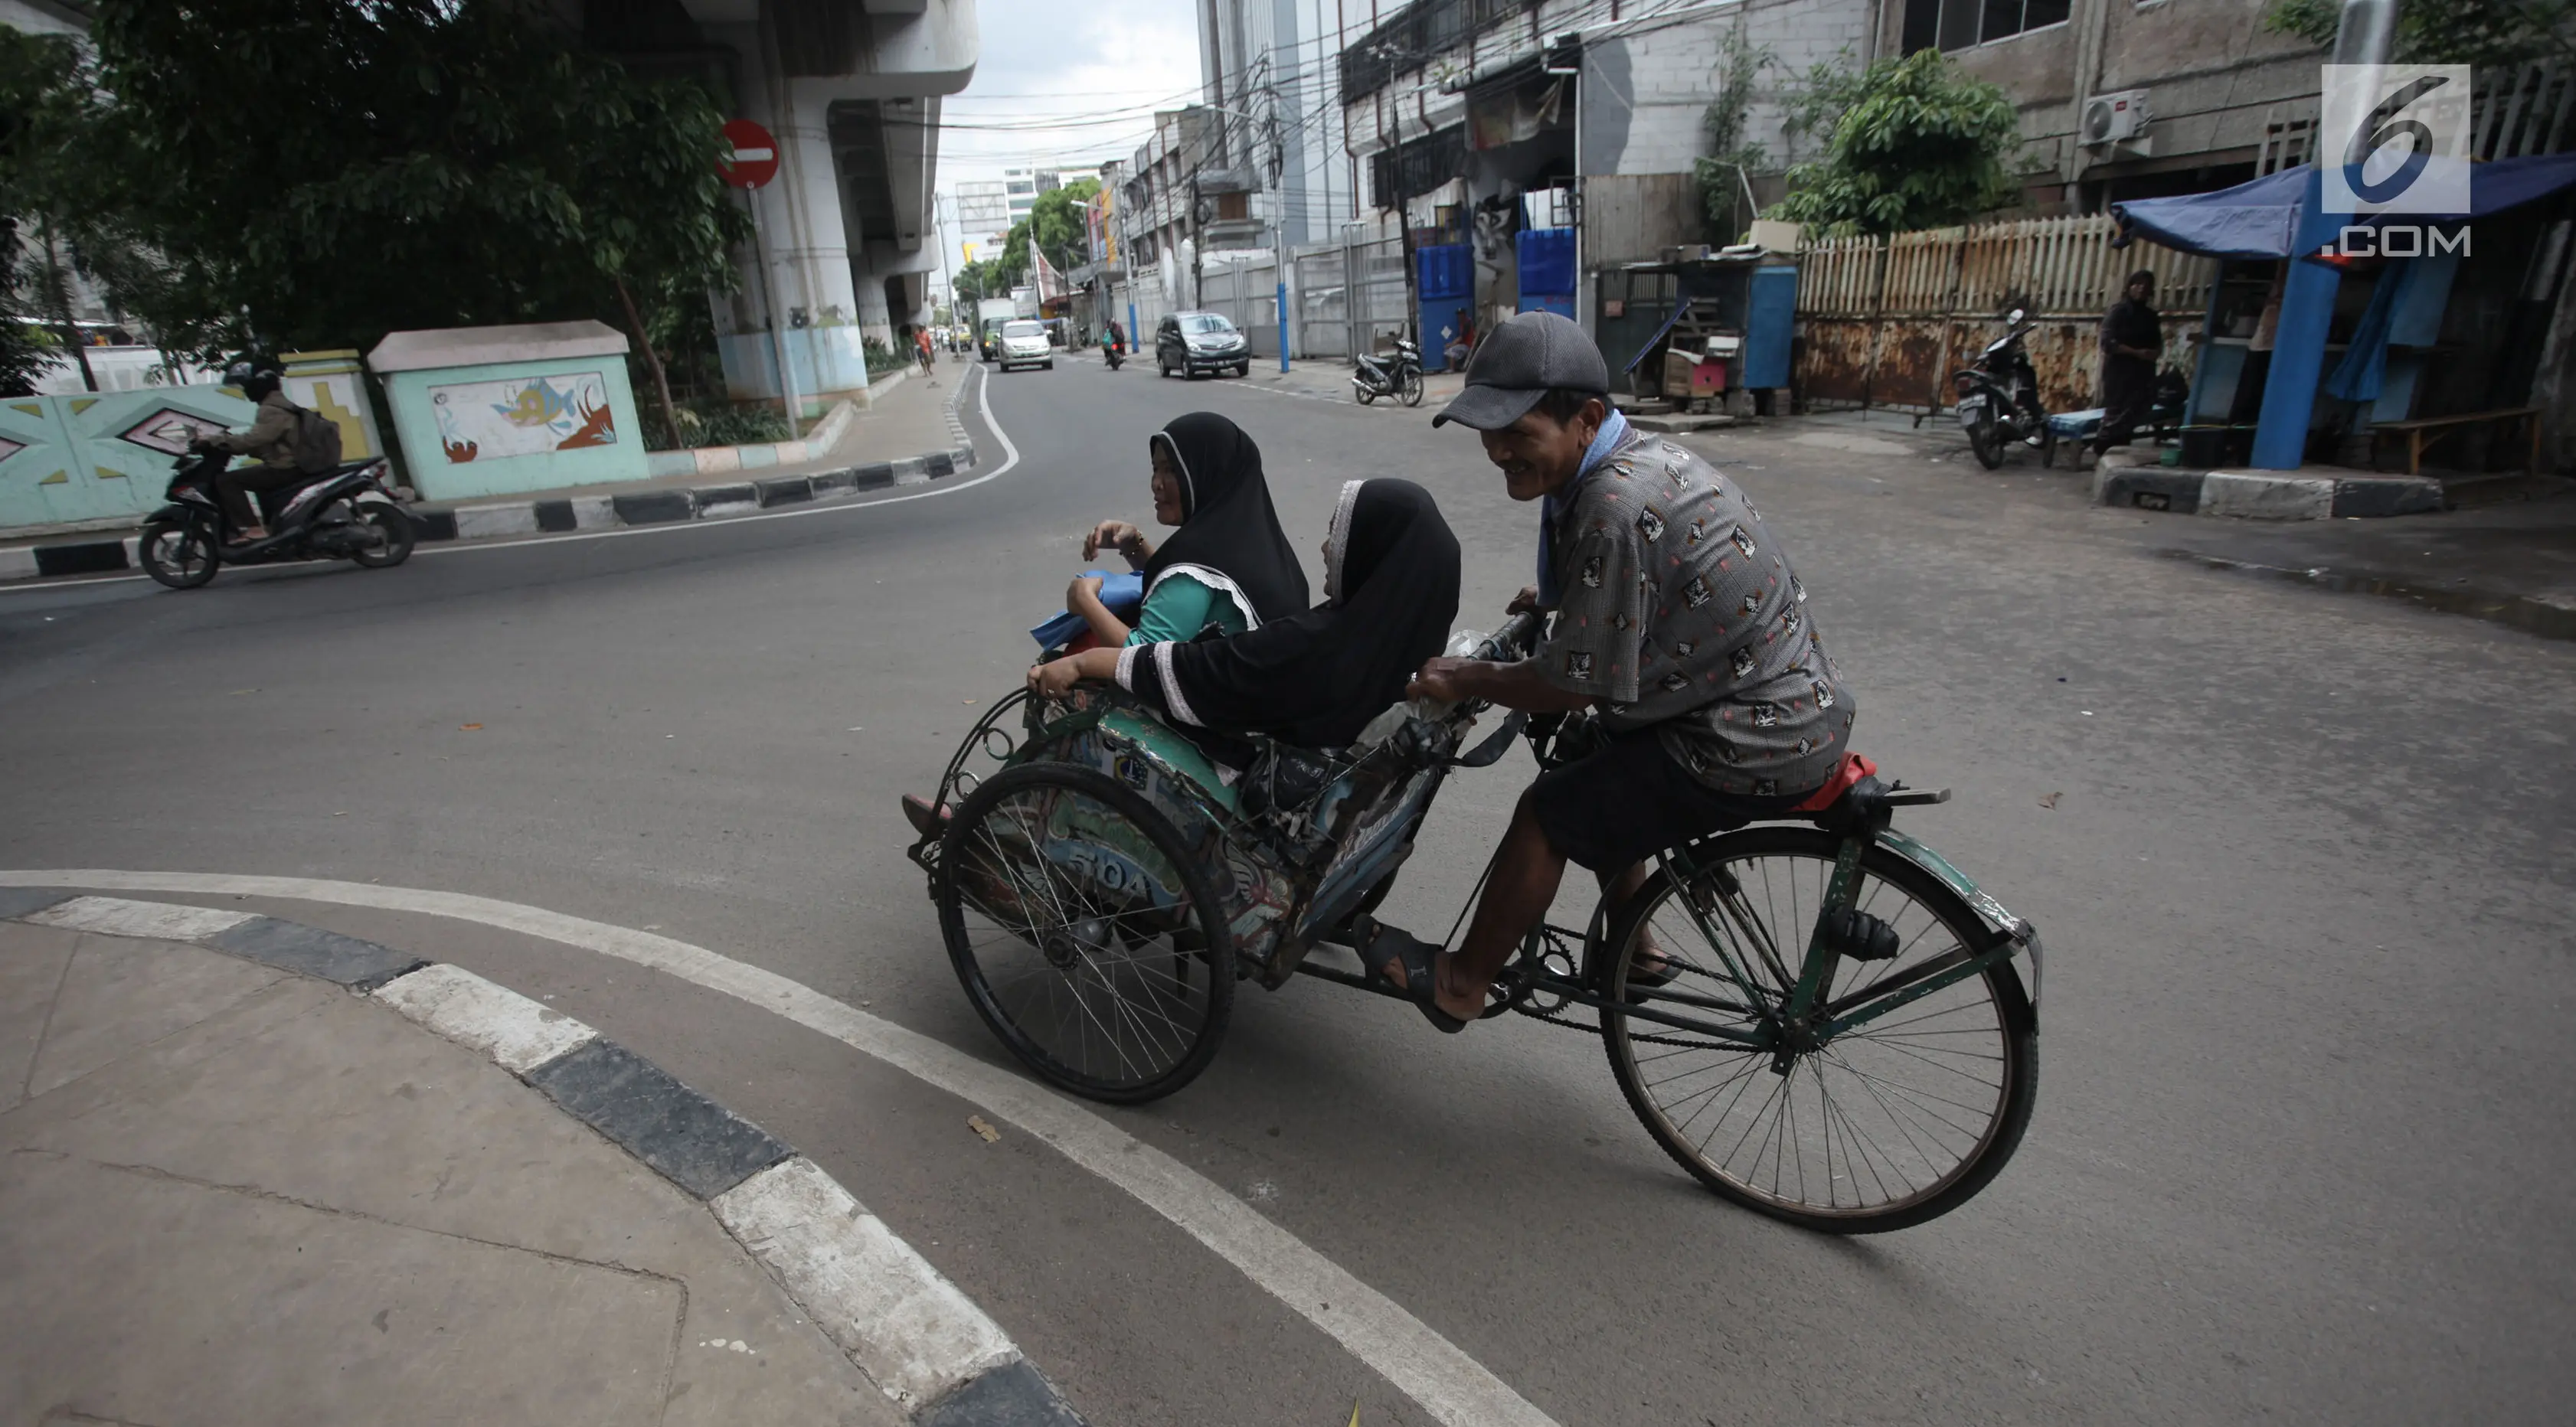 Tukang becak mengangkut penumpang saat melintas di Kolong Flyover Bandengan Utara, Jakarta, Kamis (25/1). Petugas melakukan pendataan becak diperuntukkan bagi becak-becak yang sudah lama beroperasi di Jakarta. (Liputan6.com/Arya Manggala)